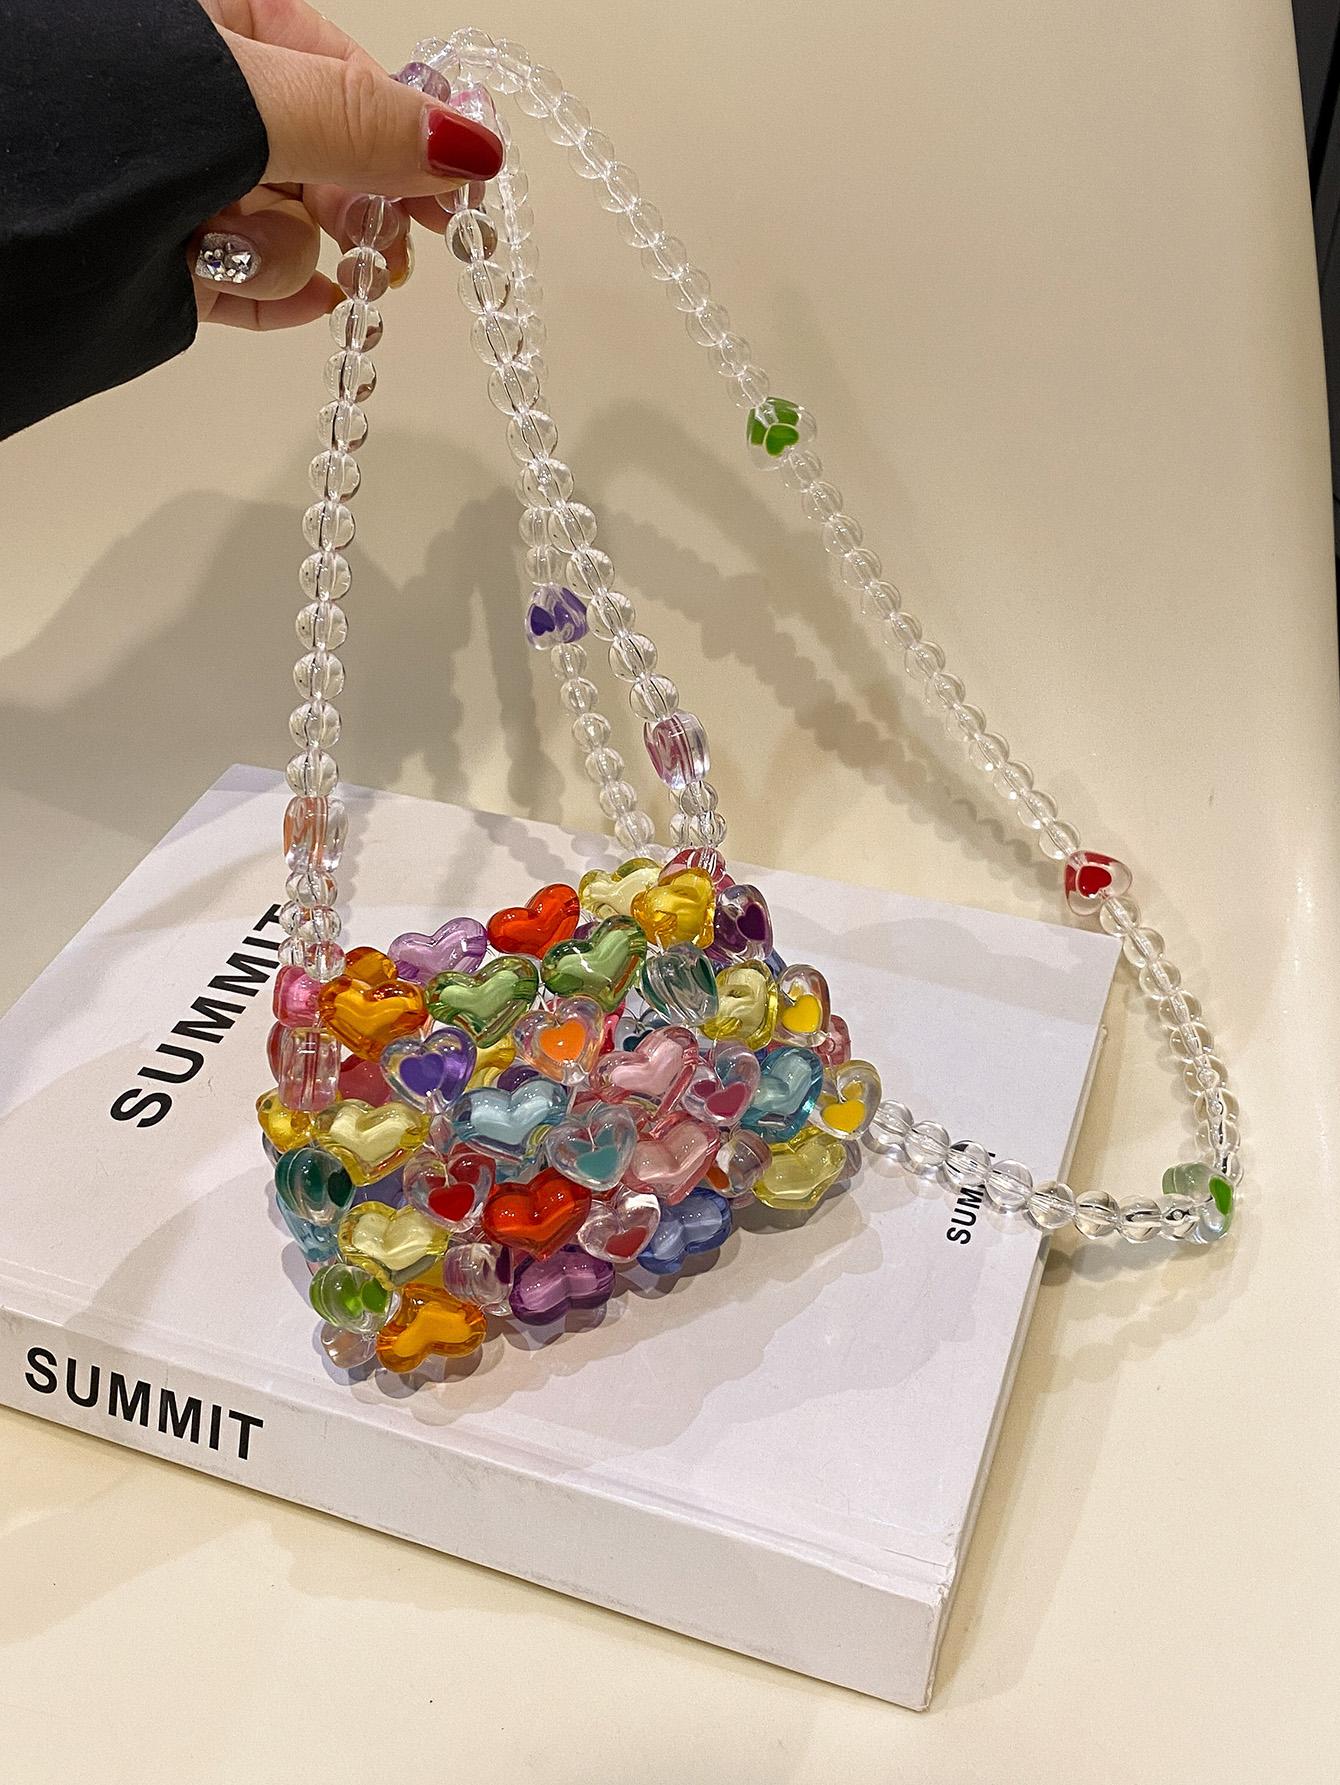 миниатюрная сумка через плечо fabergé с яйцом simone rocha красный Мини-форма сердца вышитая бисером квадратная сумка с цветными блоками модная, многоцветный